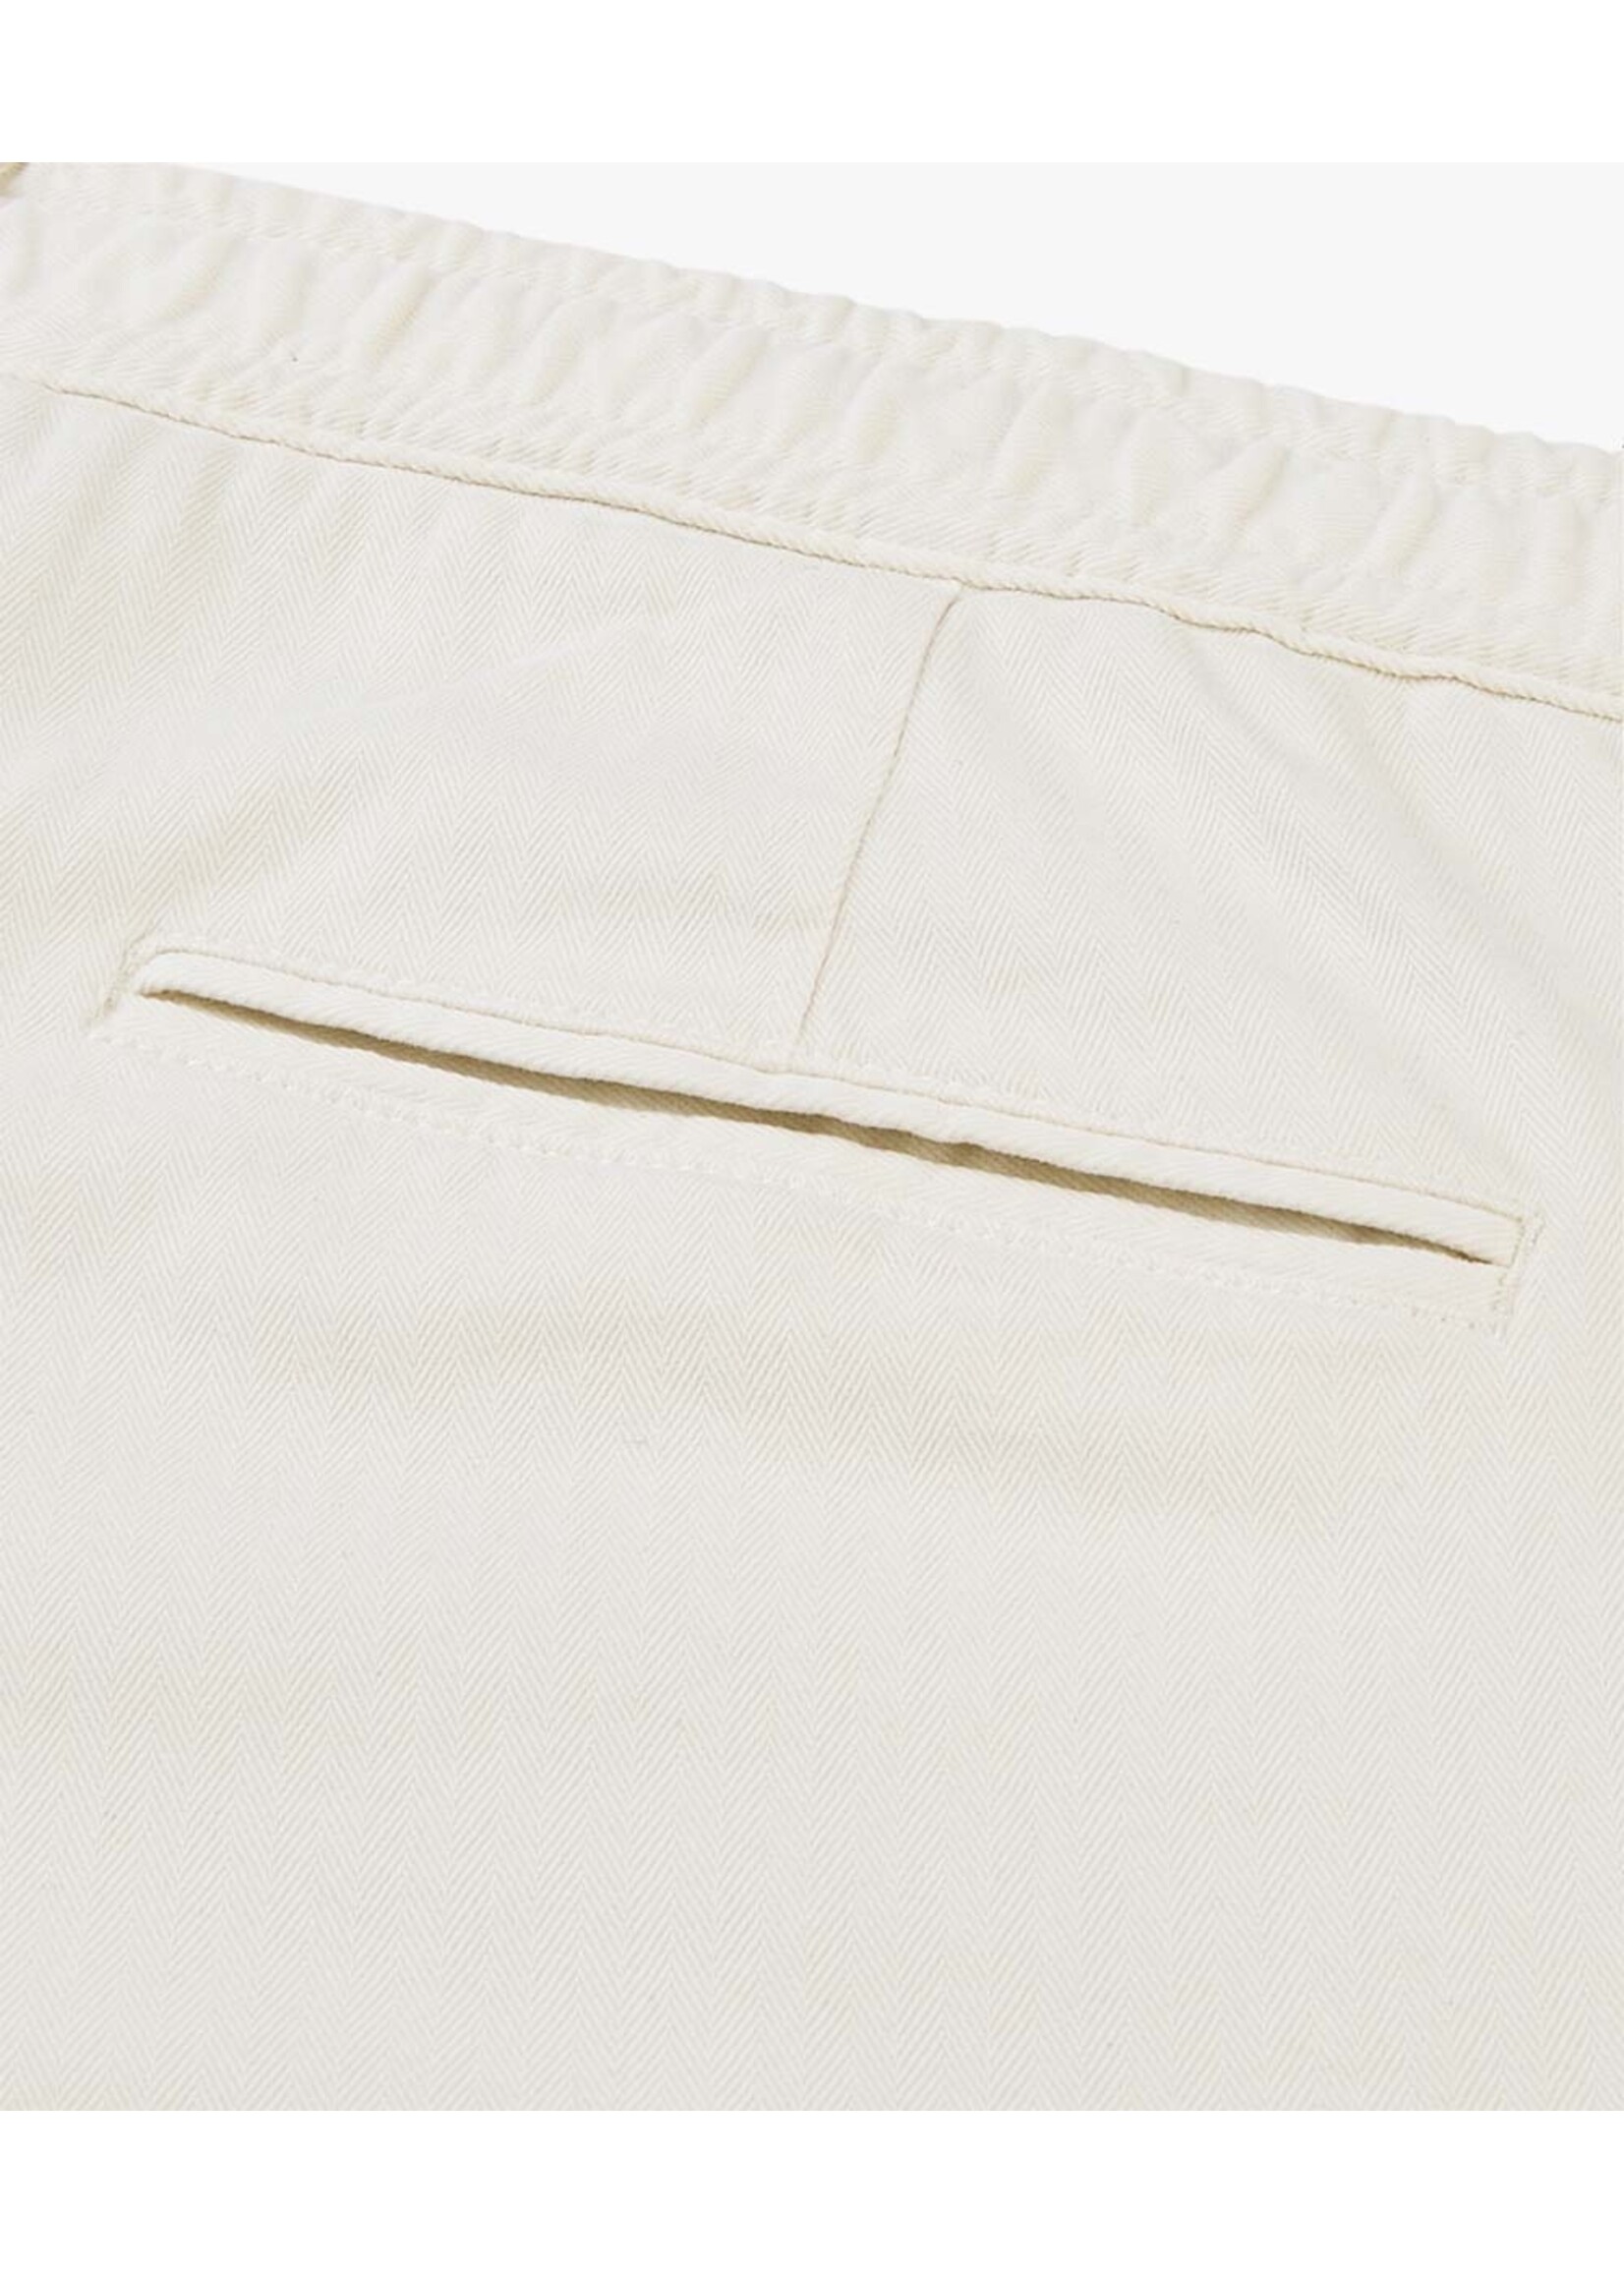 Profuomo Trouser Herringbone sportcord Off White